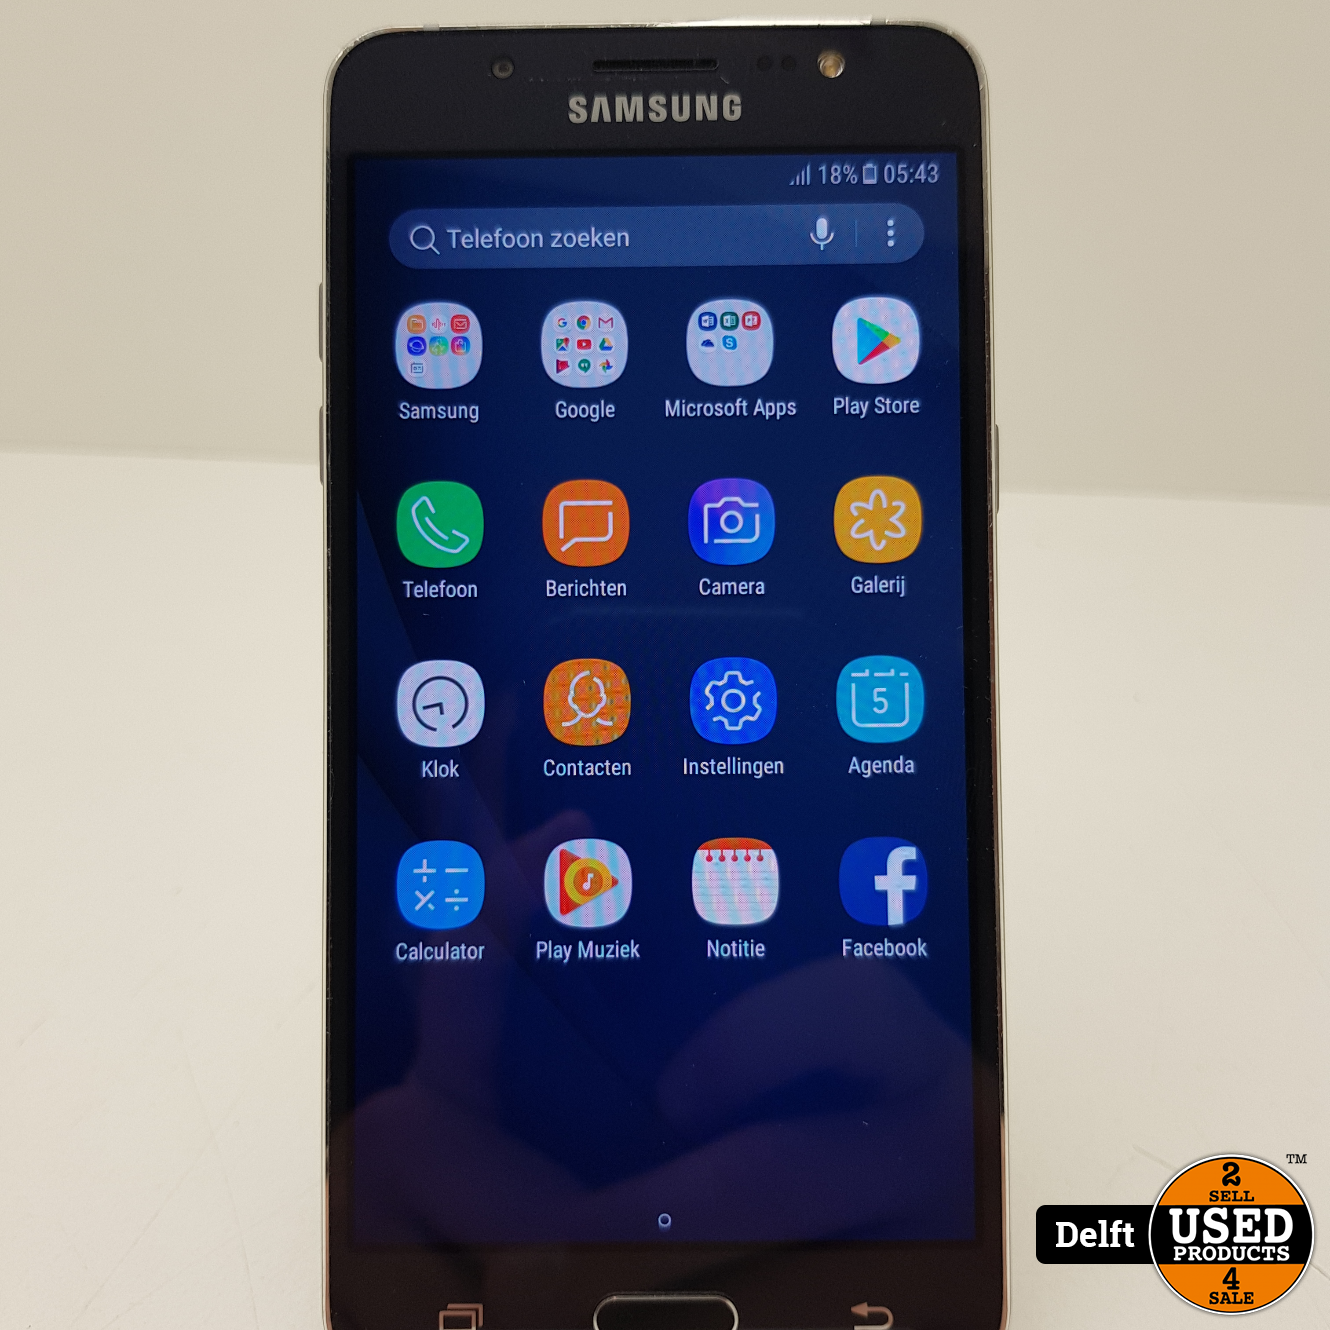 Onschuldig Vooruitzien pad Samsung Galaxy J5 2016 nette staat 3 maanden garantie - Used Products Delft